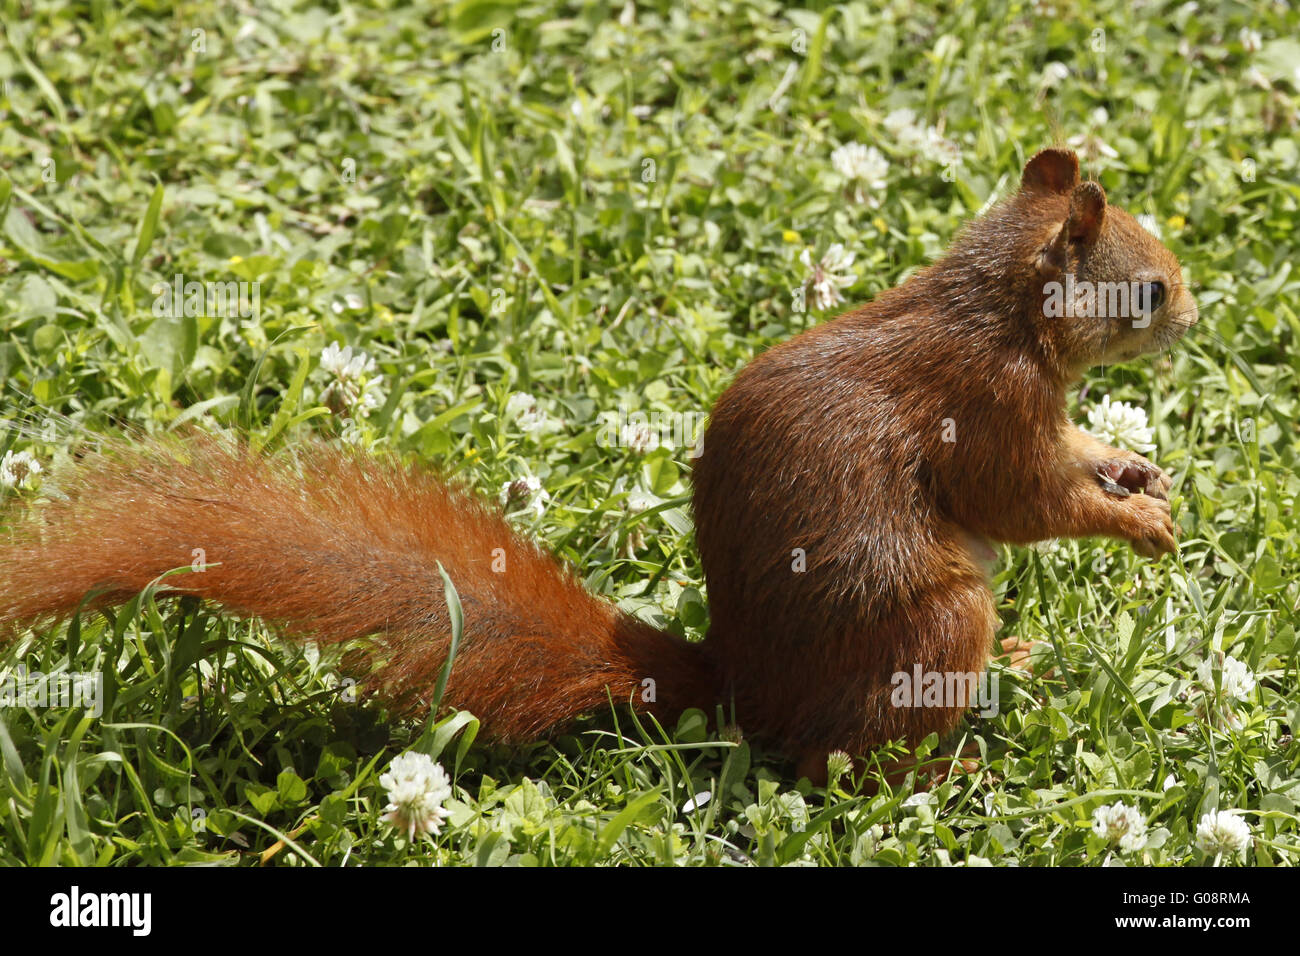 Red squirrel / Sciurus vulgaris on the lawn Stock Photo